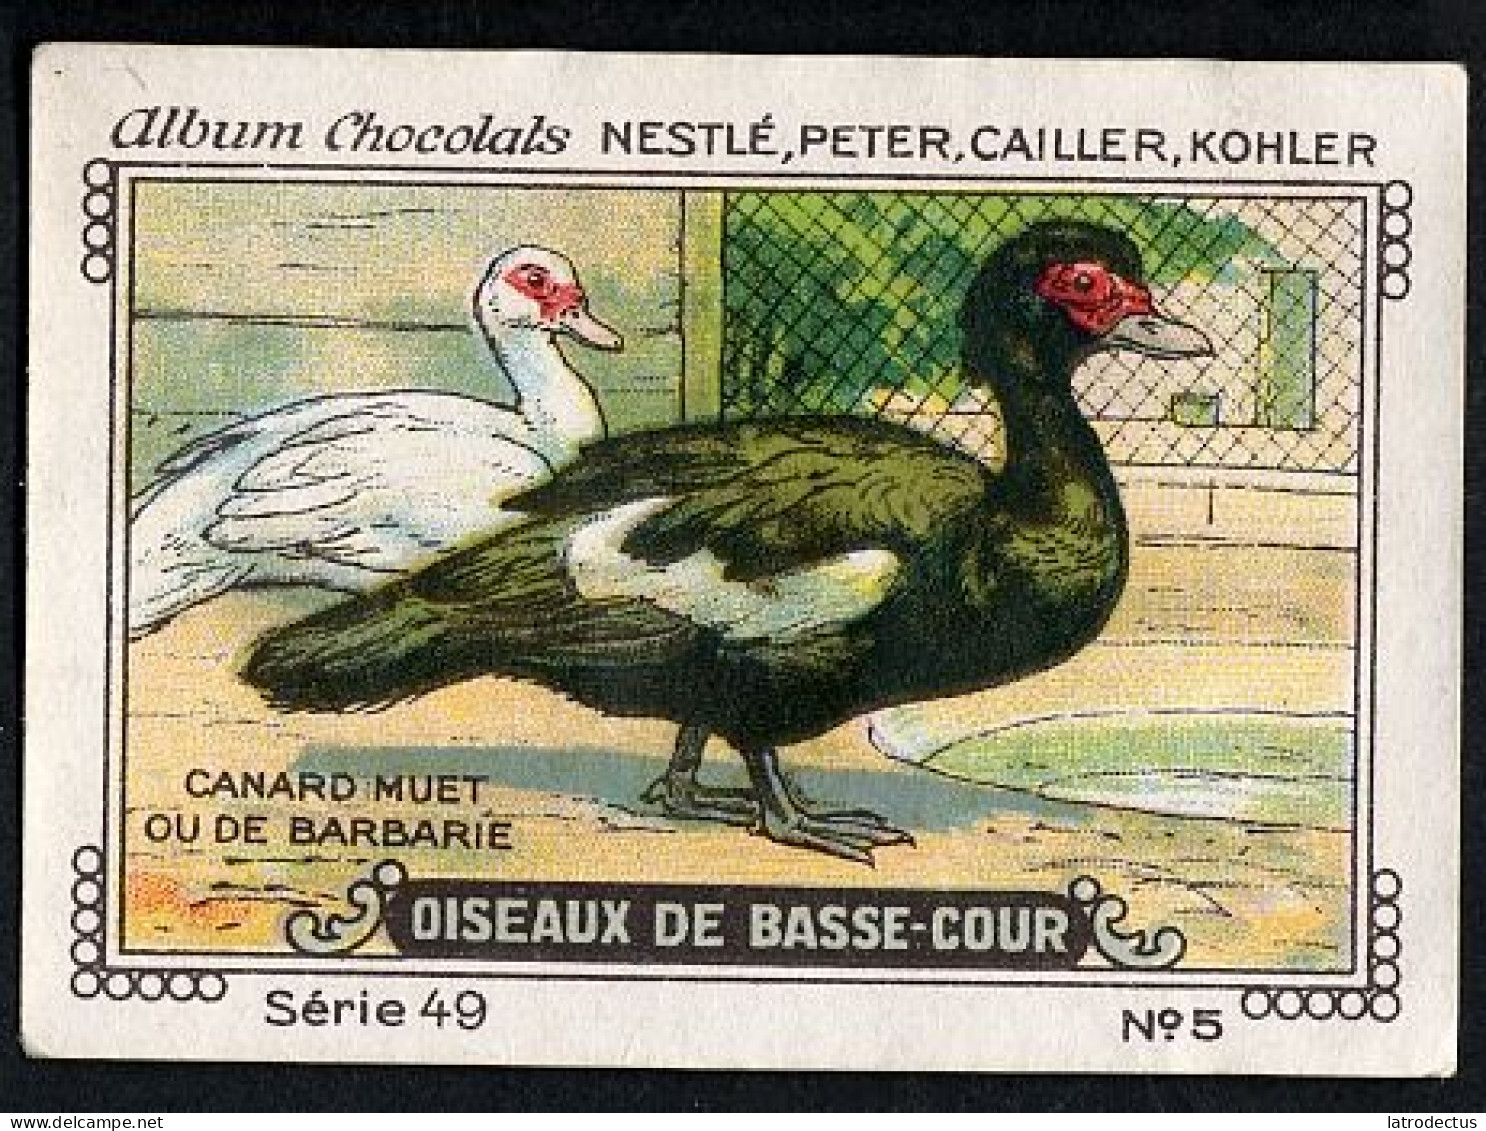 Nestlé - 49 - Oiseaux De Basse-Cour, Farm Birds - 5 - Canard Muet Ou De Barbarie - Nestlé